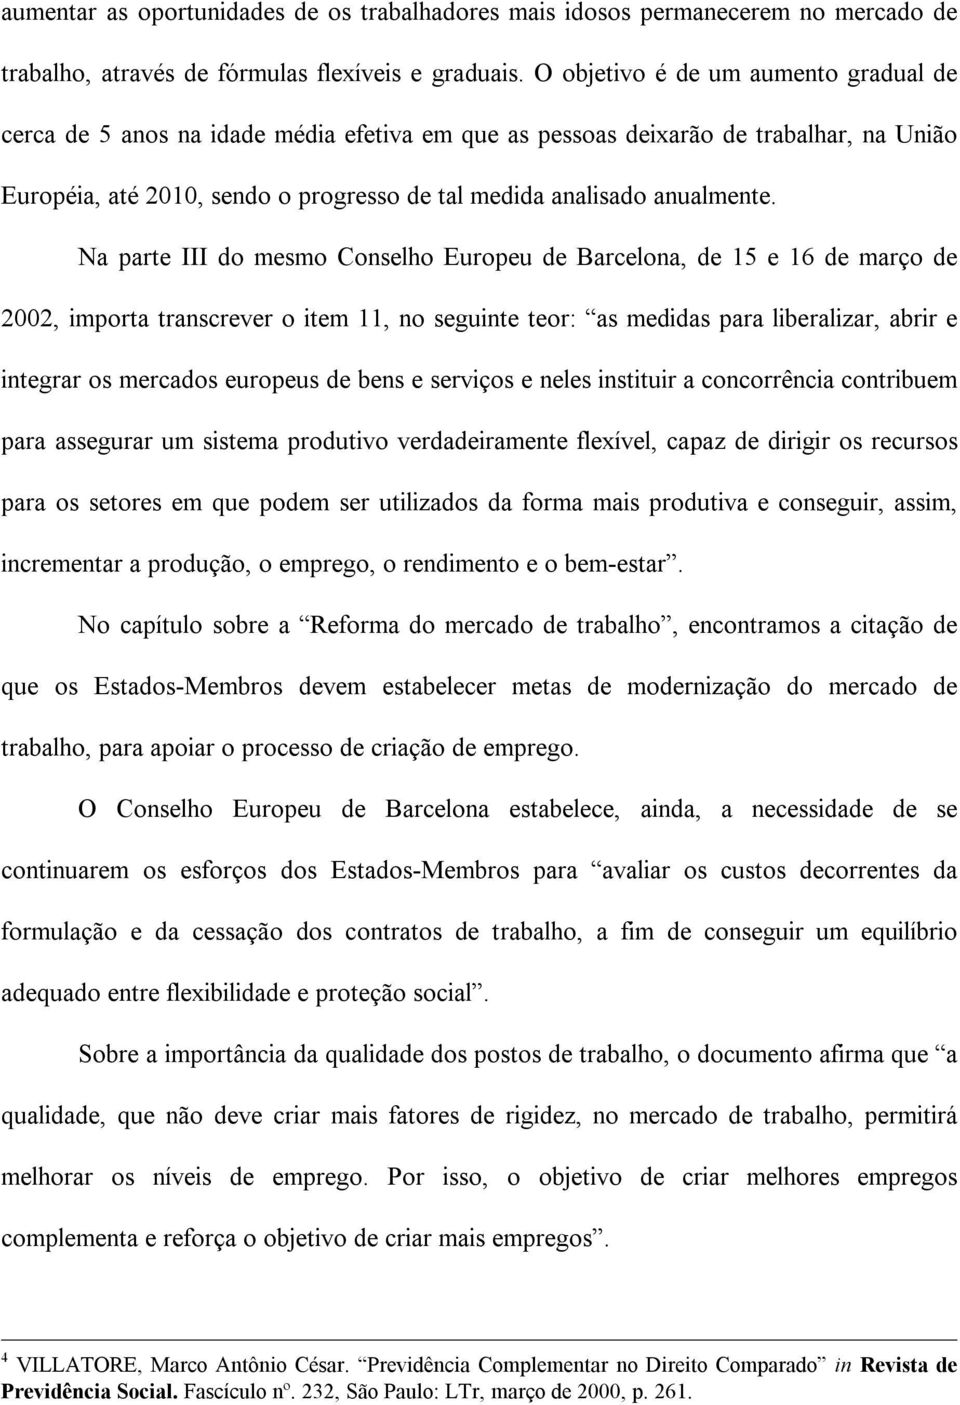 Na parte III do mesmo Conselho Europeu de Barcelona, de 15 e 16 de março de 2002, importa transcrever o item 11, no seguinte teor: as medidas para liberalizar, abrir e integrar os mercados europeus